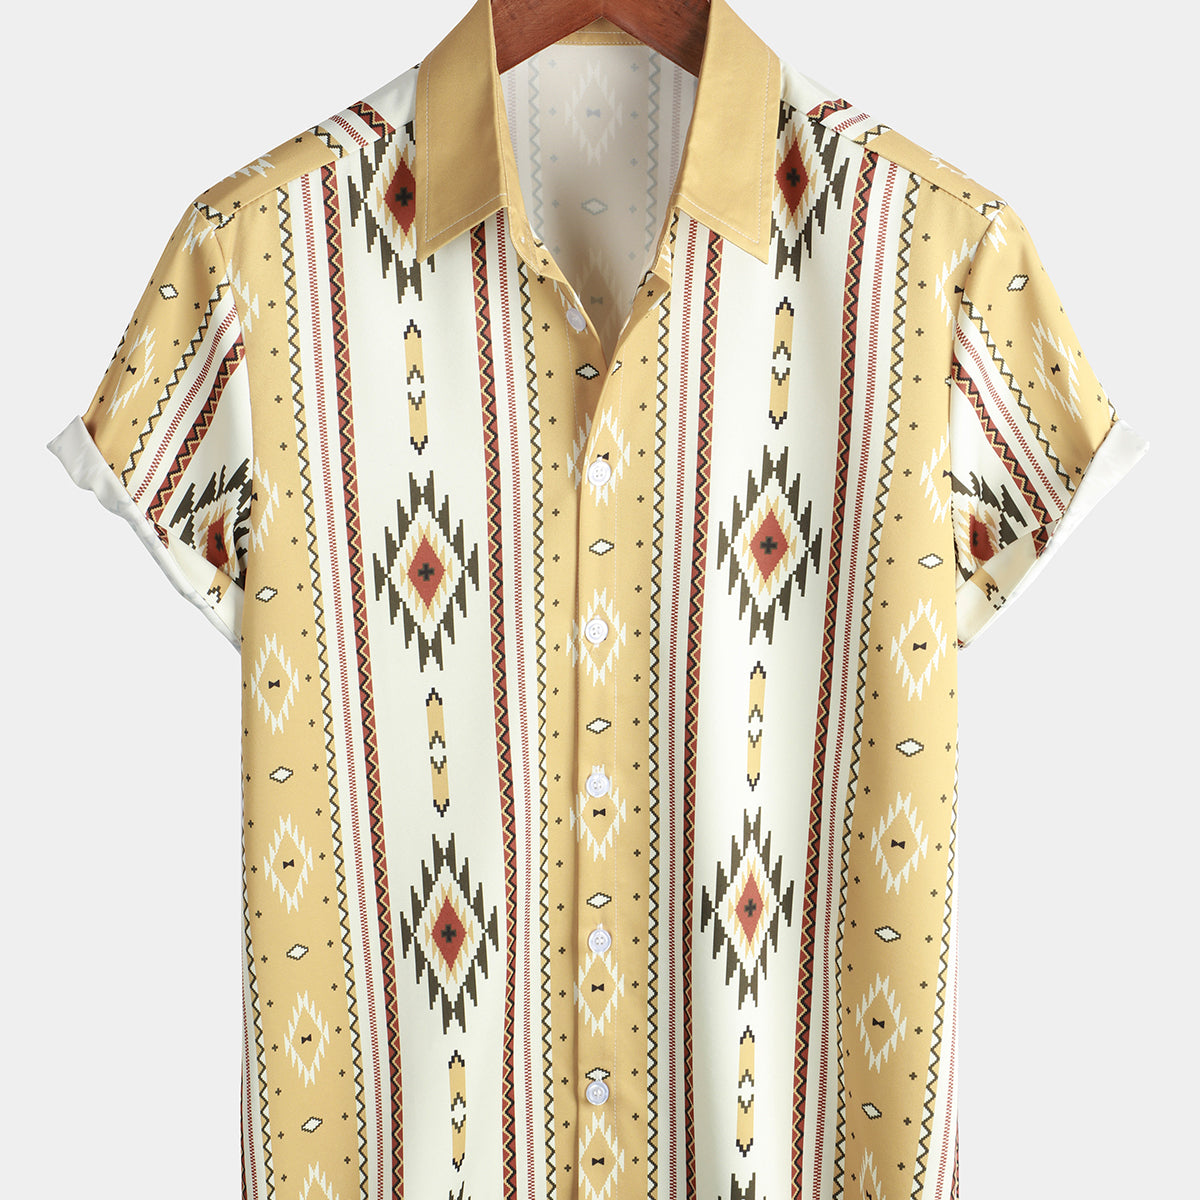 Men's Vintage Vertical Striped Short Sleeve 70s Retro Aztec Print Button Up Shirt